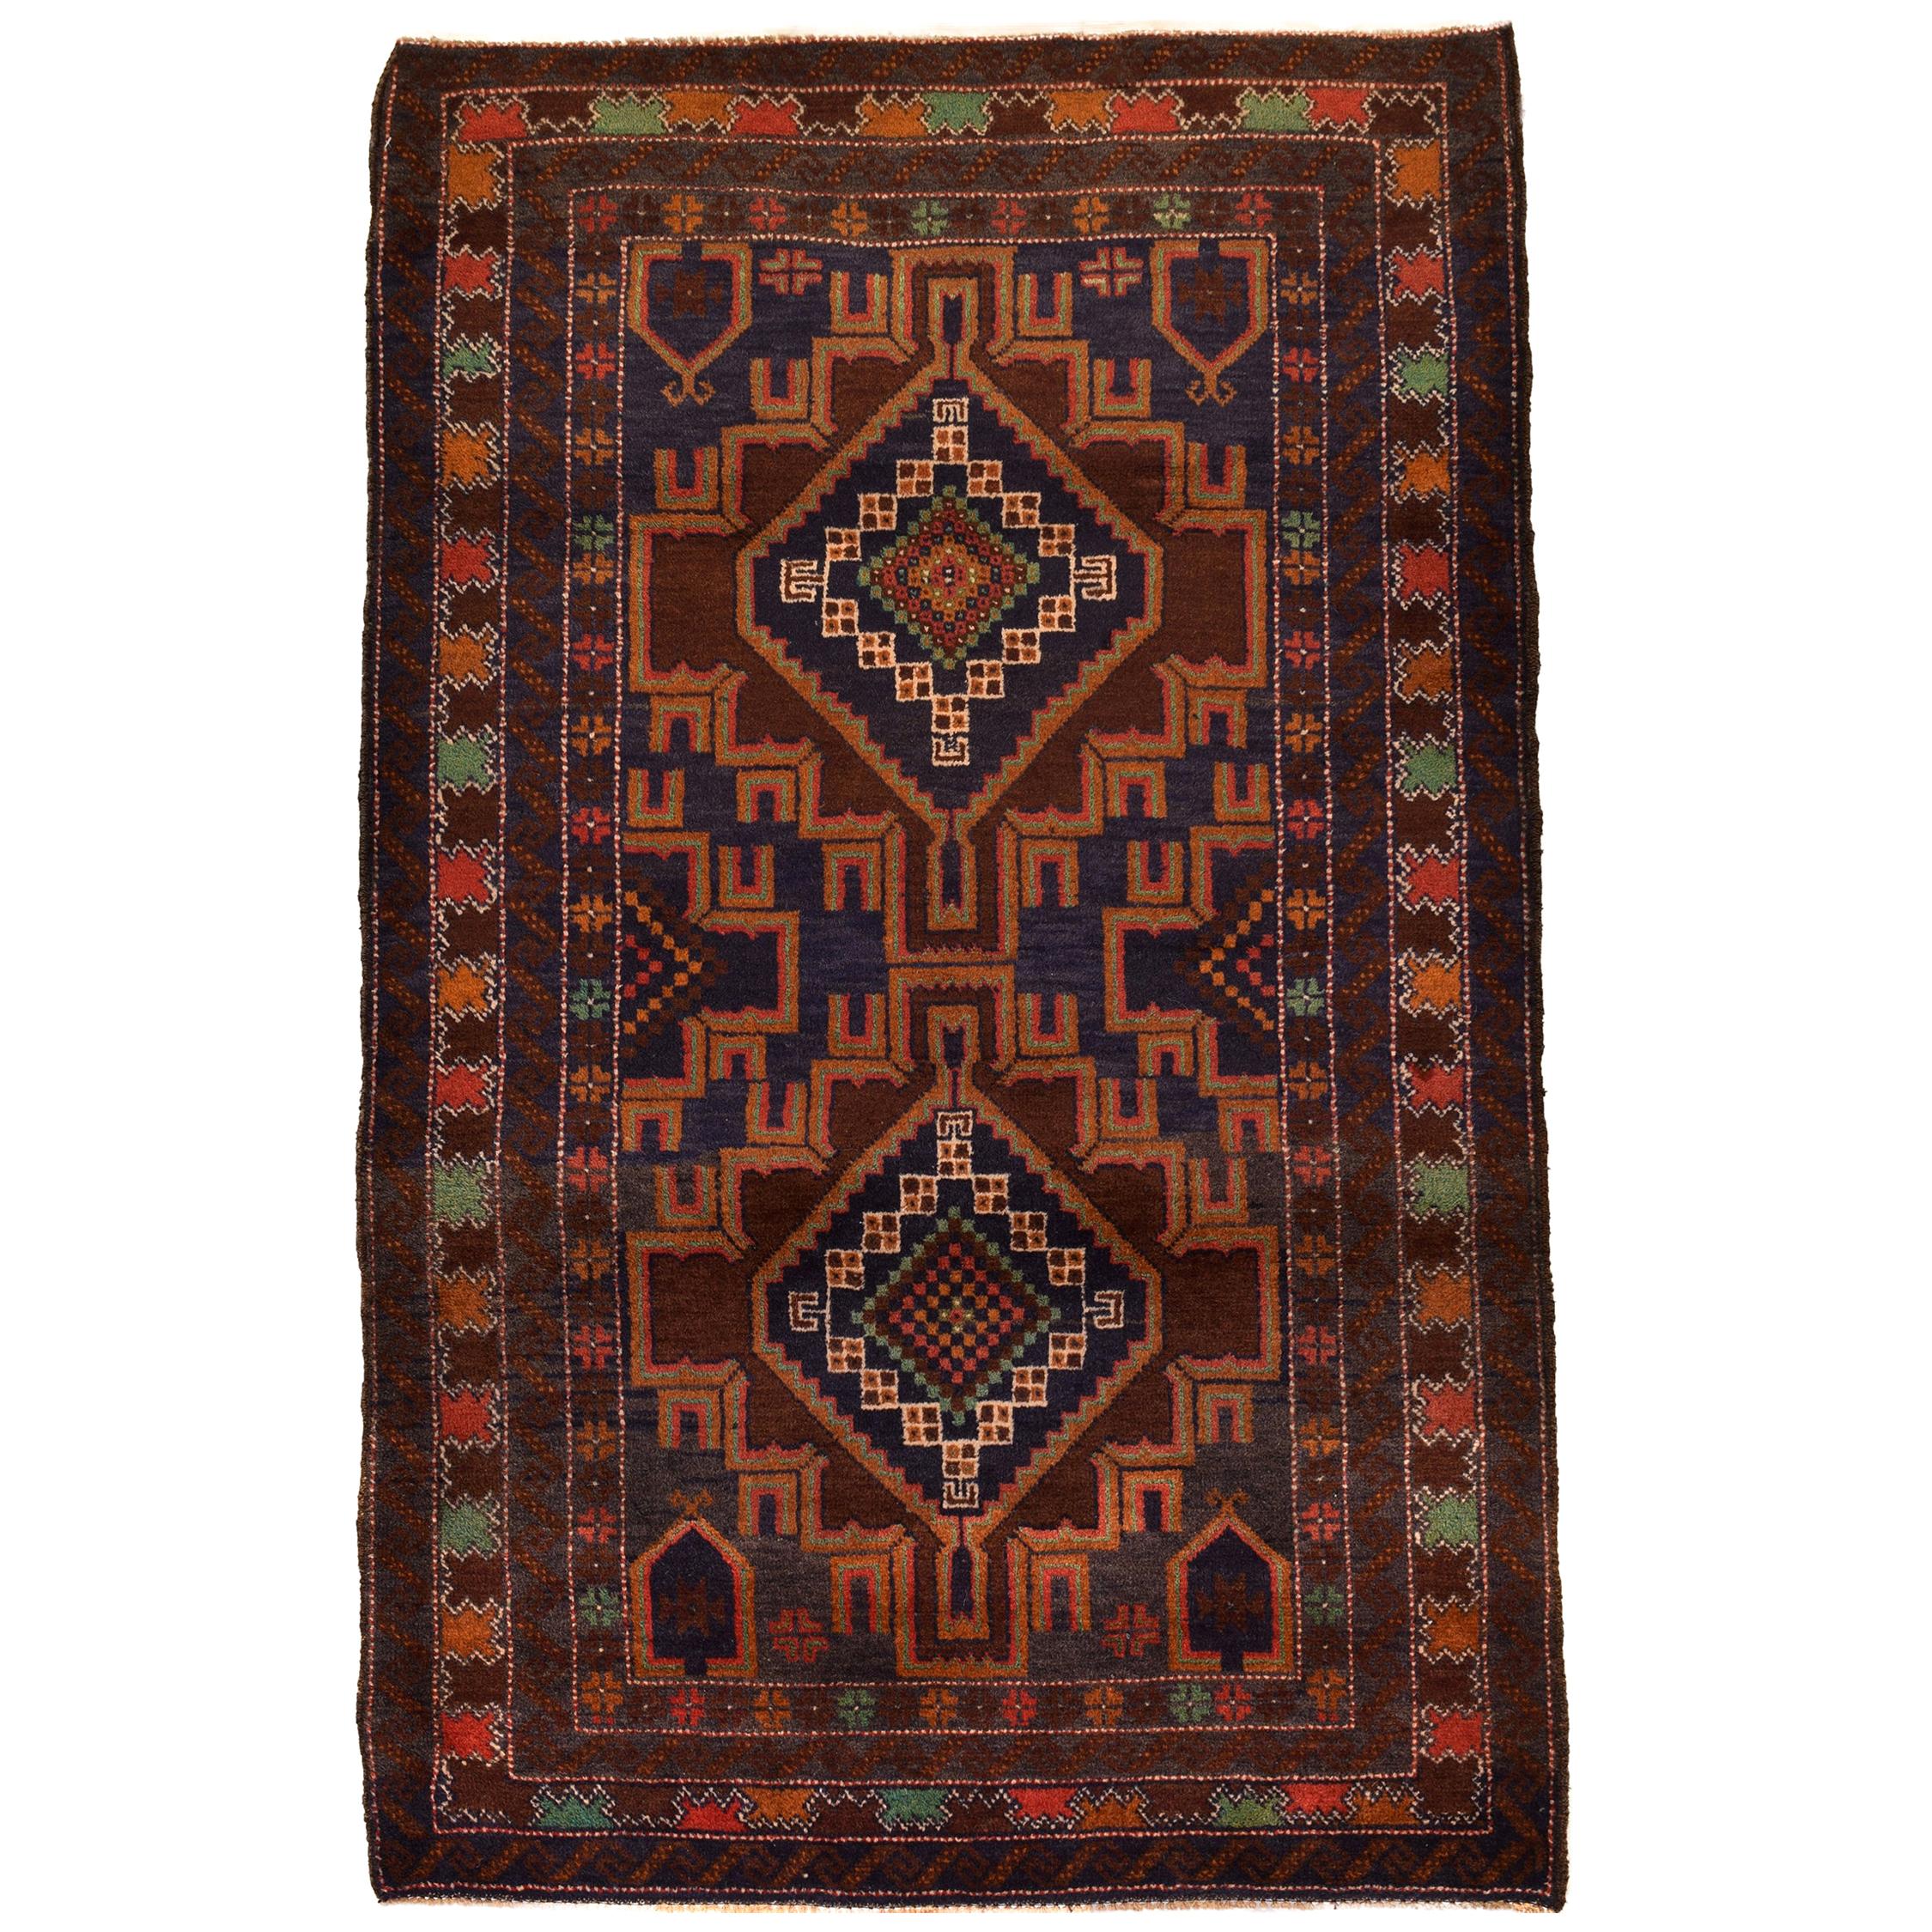 Persischer Balouchi-Teppich aus Wolle, geometrisch, mit Medaillons, 3' x 5'